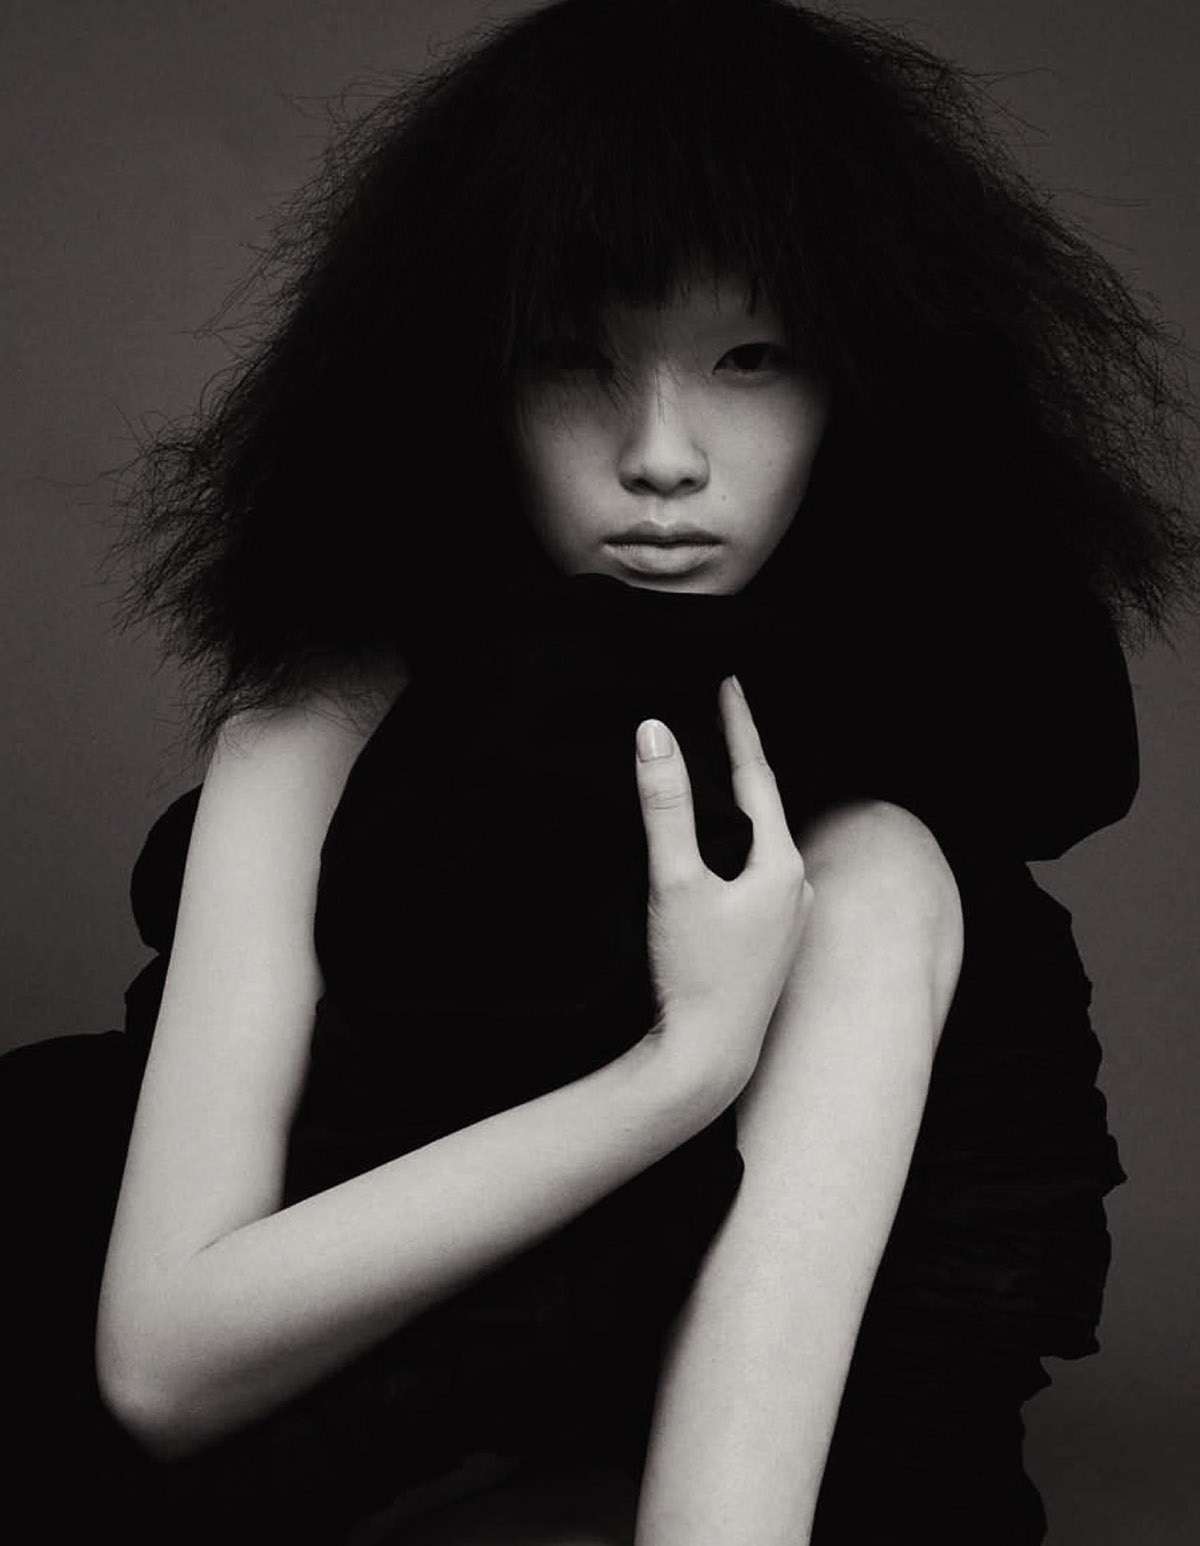 Xie Chaoyu by Ziqian Wang for Vogue China March 2021